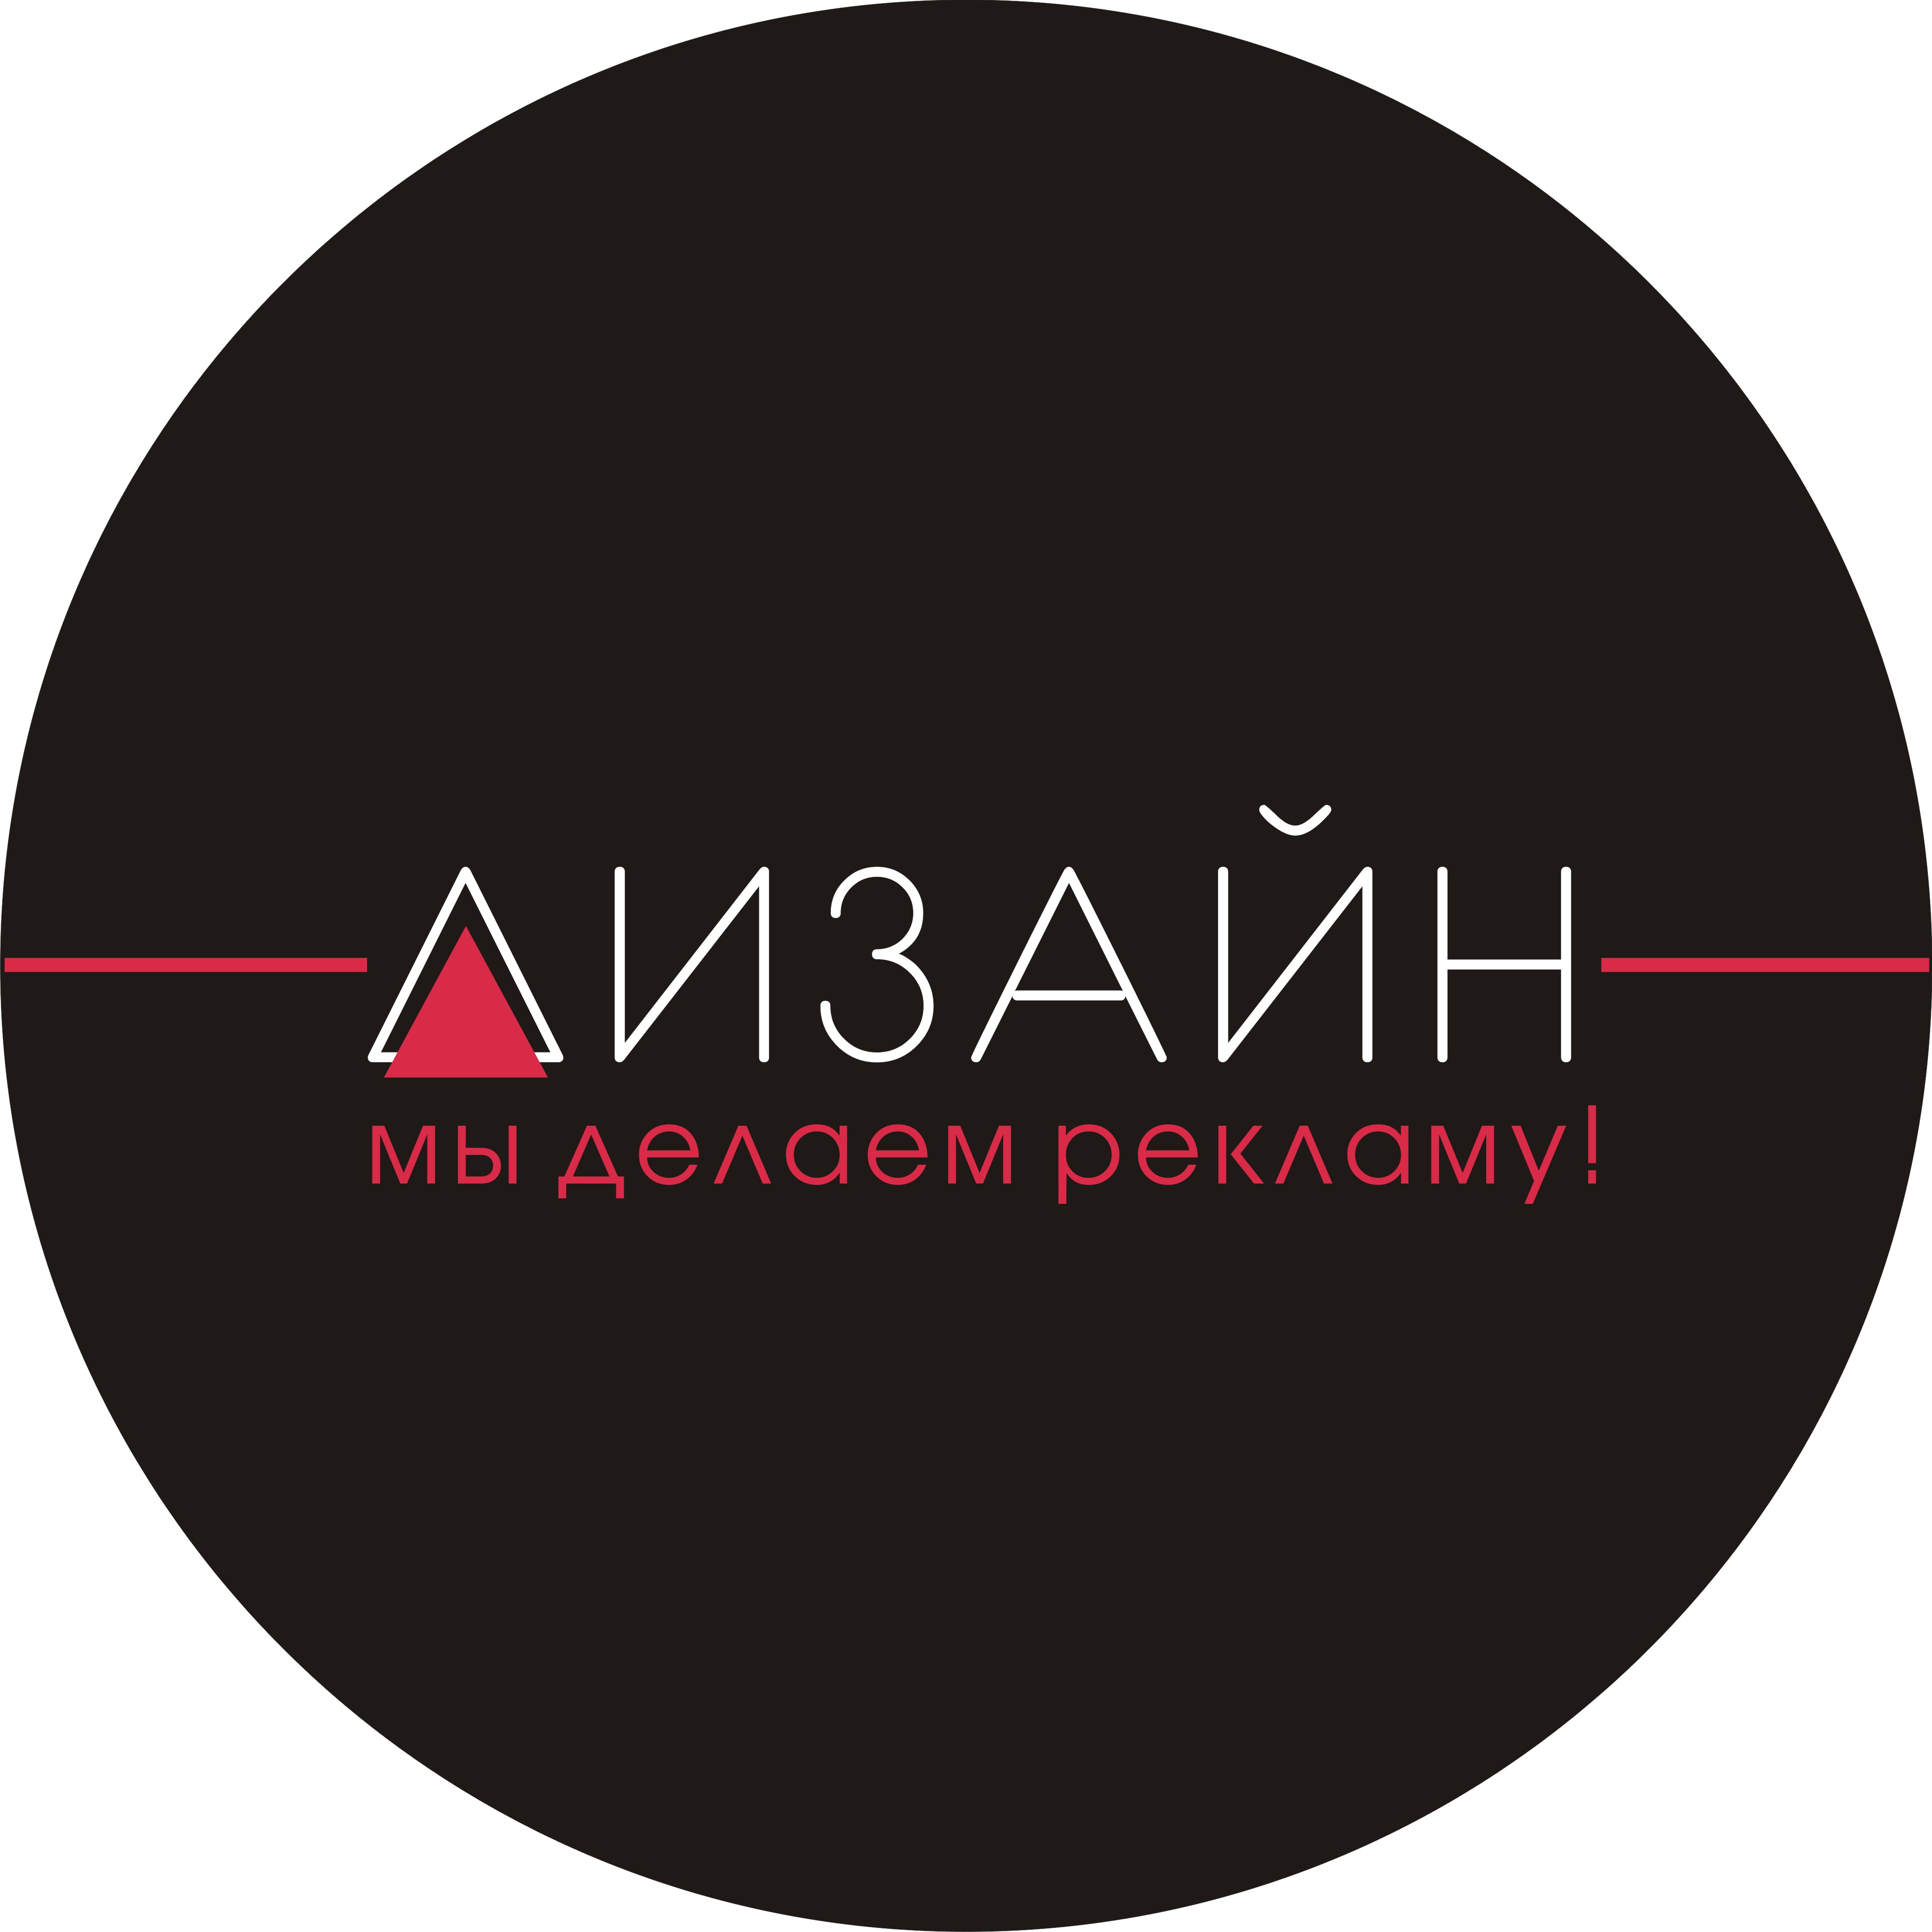 Рекламное агентство «Дизайн» предлагает широкий спектр услуг! в городе Миллерово, фото 1, Ростовская область